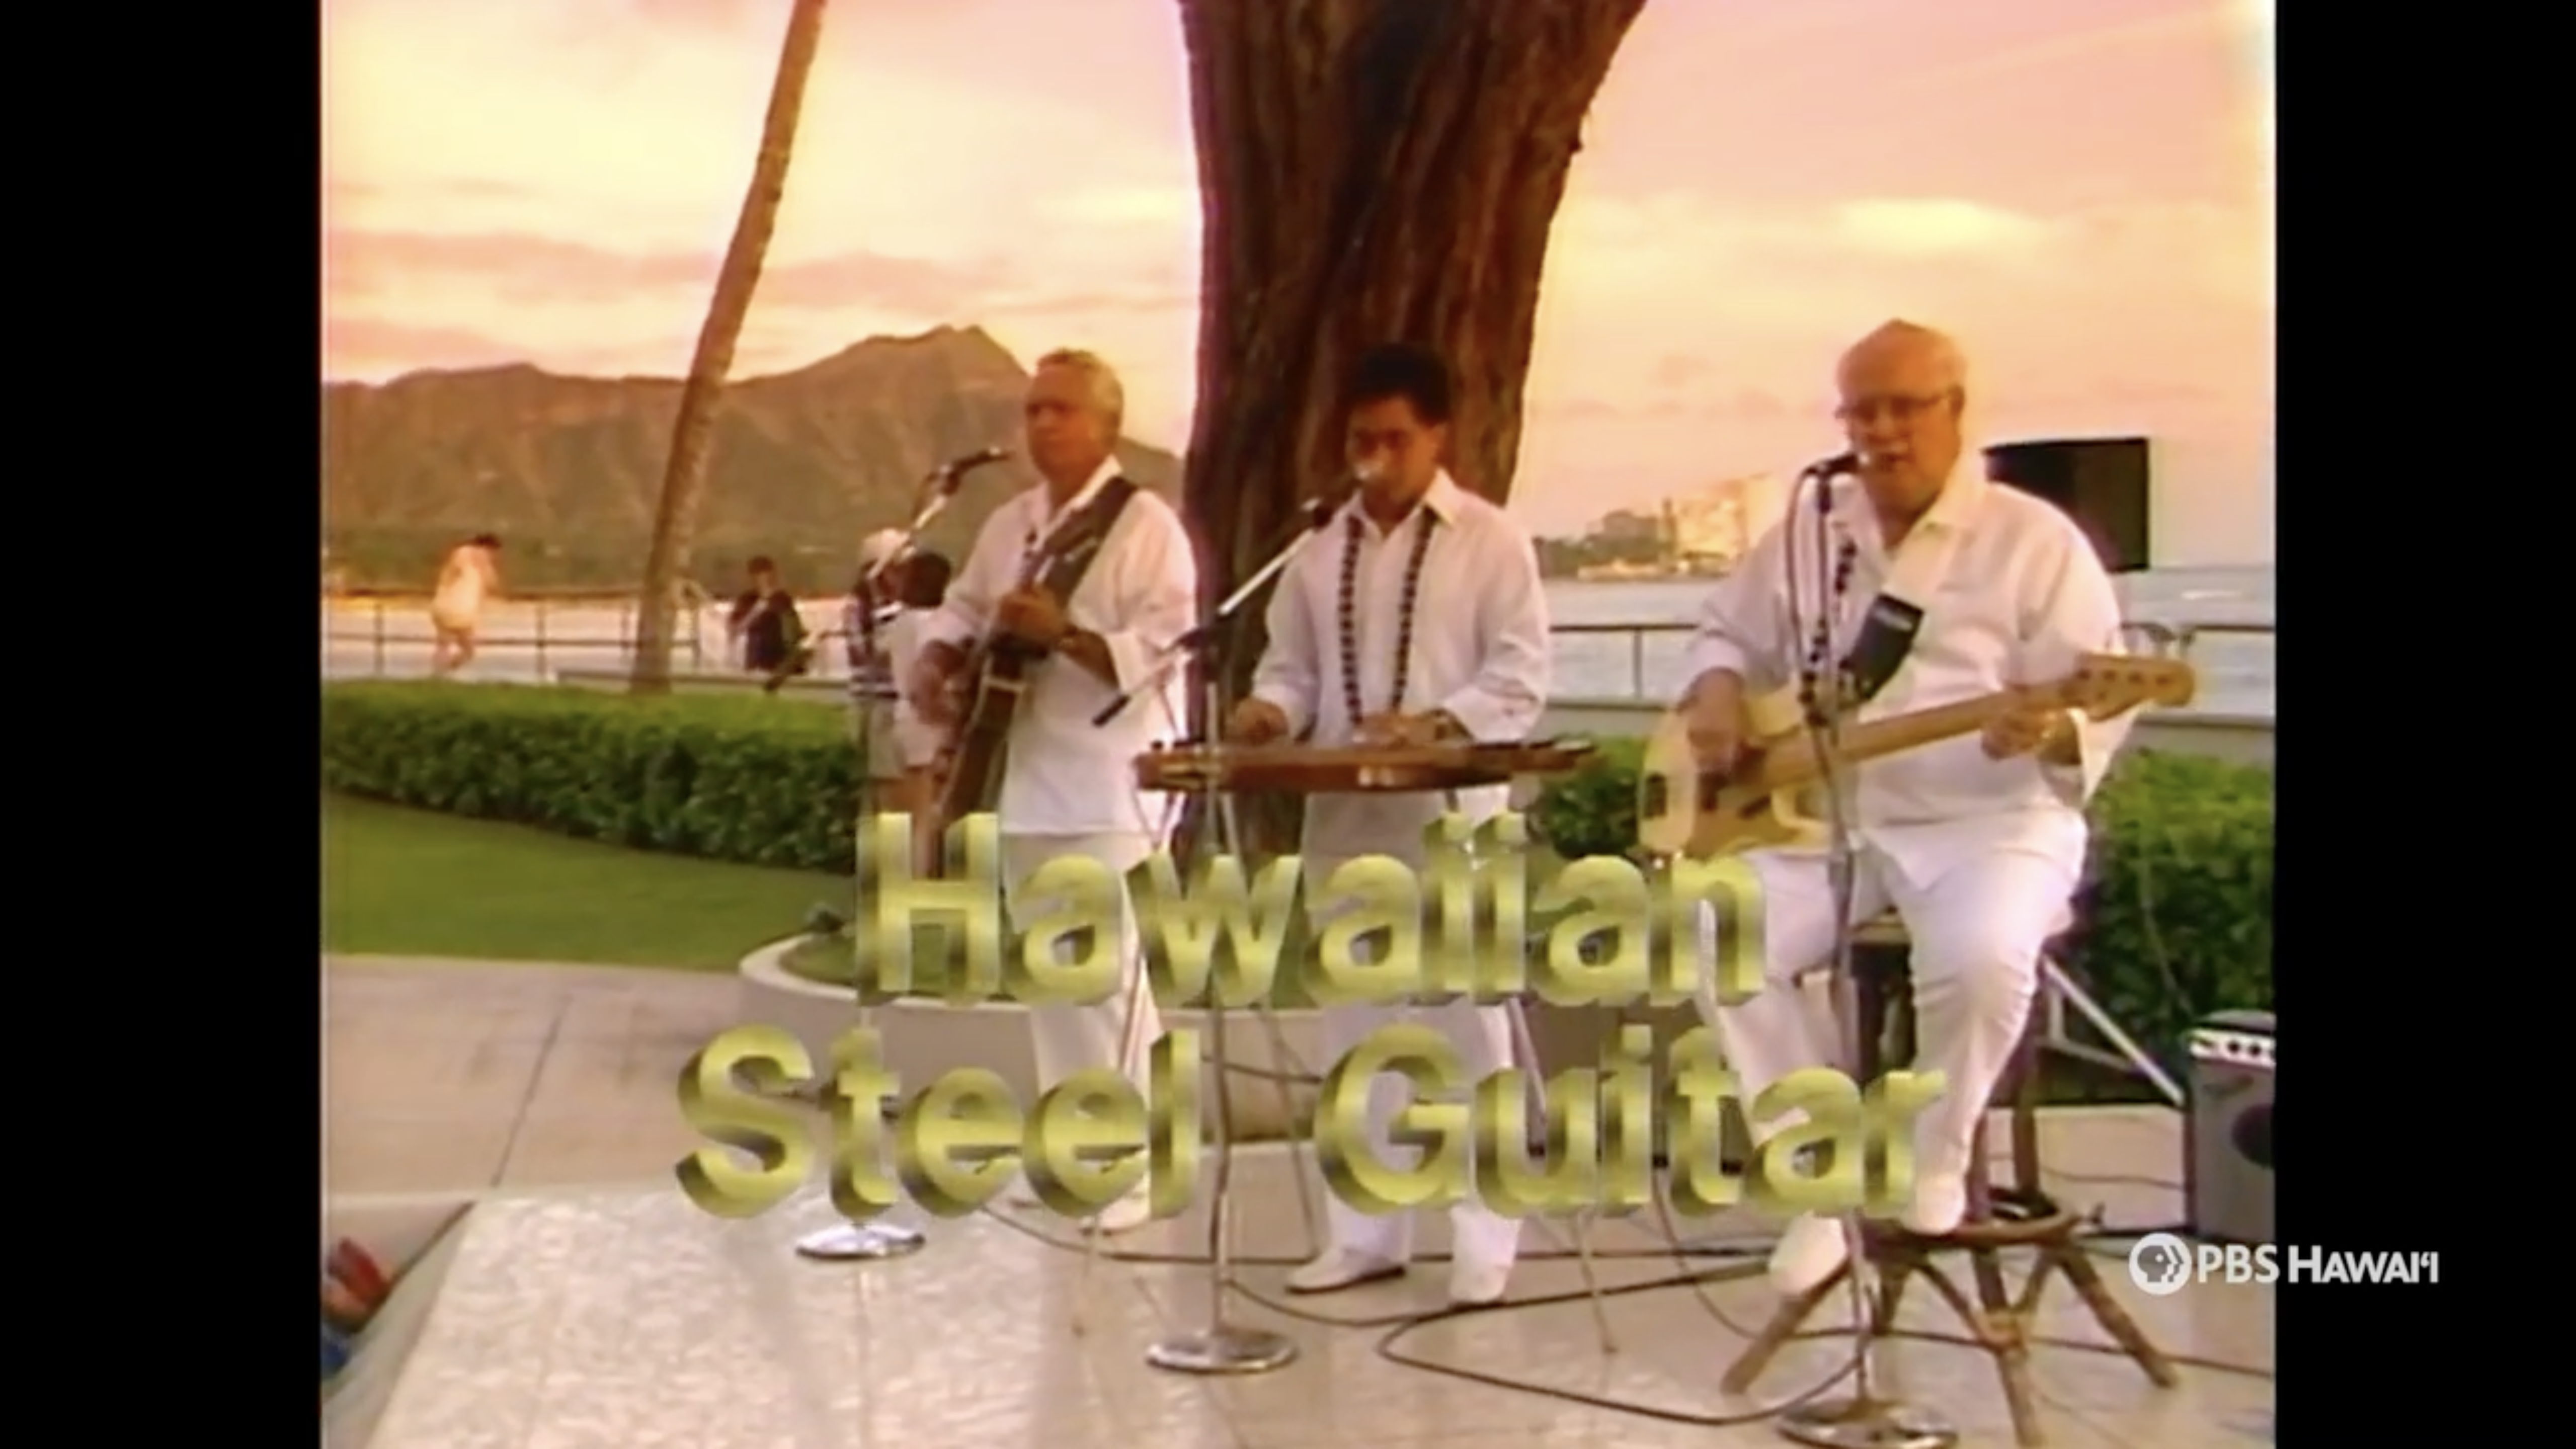 Hawaiian Steel Guitar